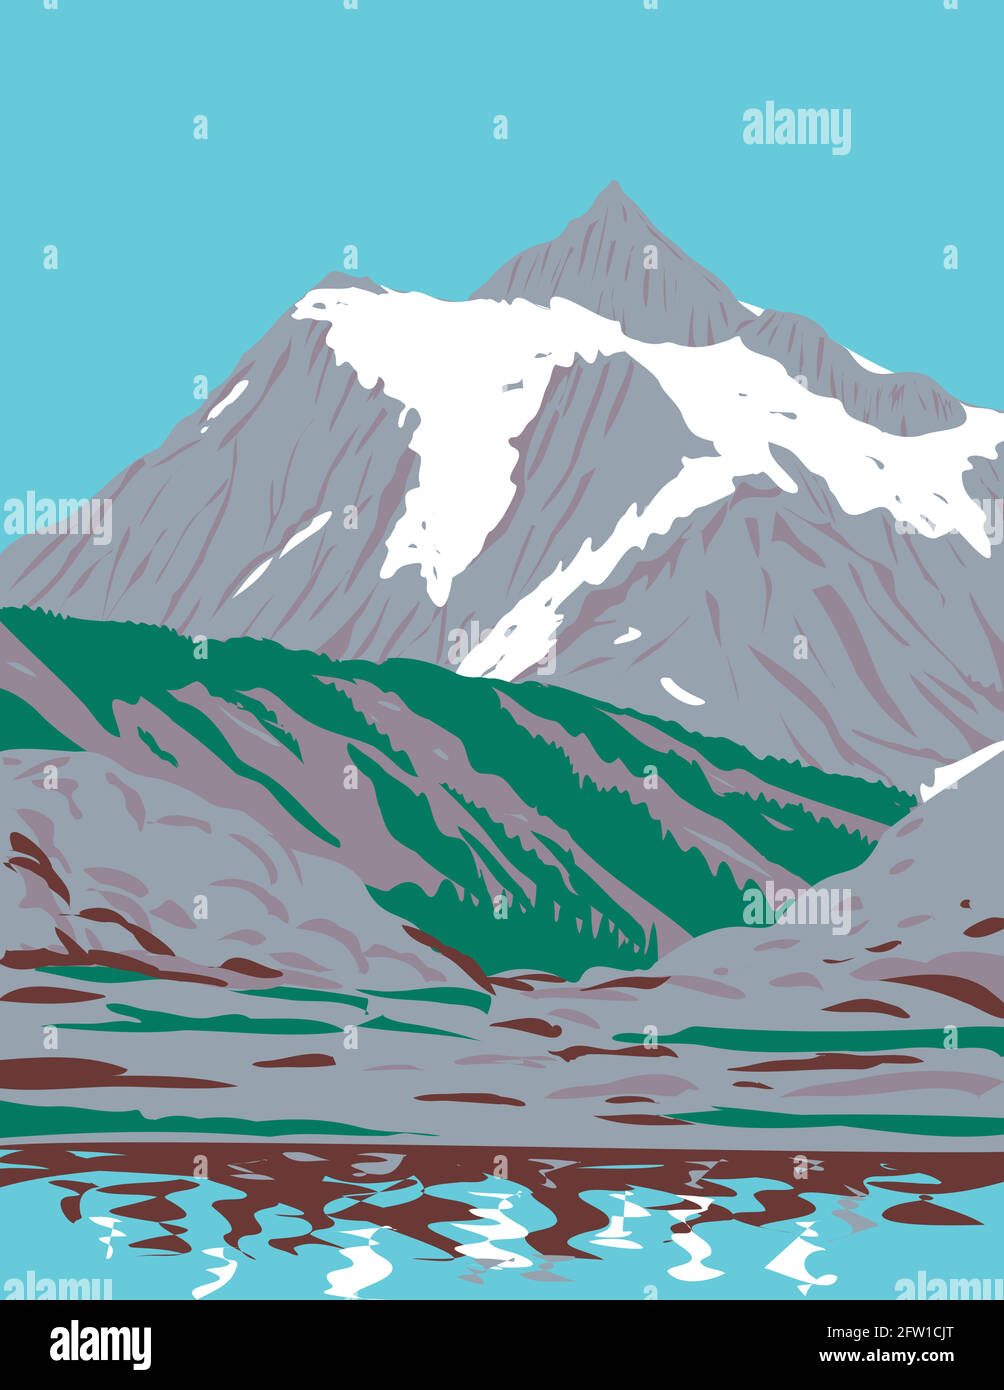 WPA Poster Art of Mount Shuksan un massiccio glaciato in Cascade Range si trova nel Northern Cascades National Park a Washington fatto in lavori progetto adm Illustrazione Vettoriale